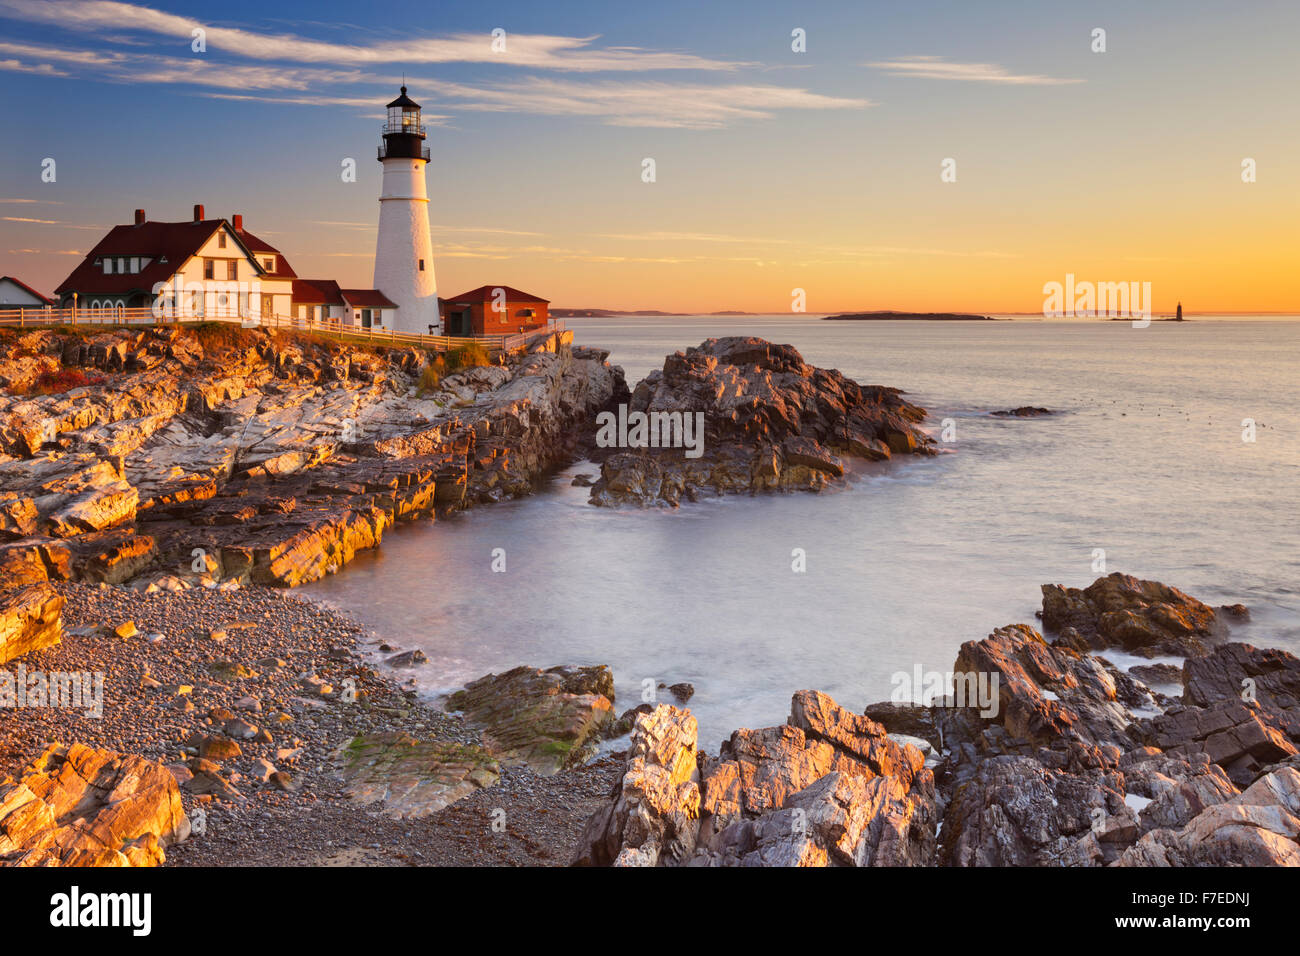 Le Portland Head Lighthouse à Cape Elizabeth, Maine, USA. Photographié au lever du soleil. Banque D'Images